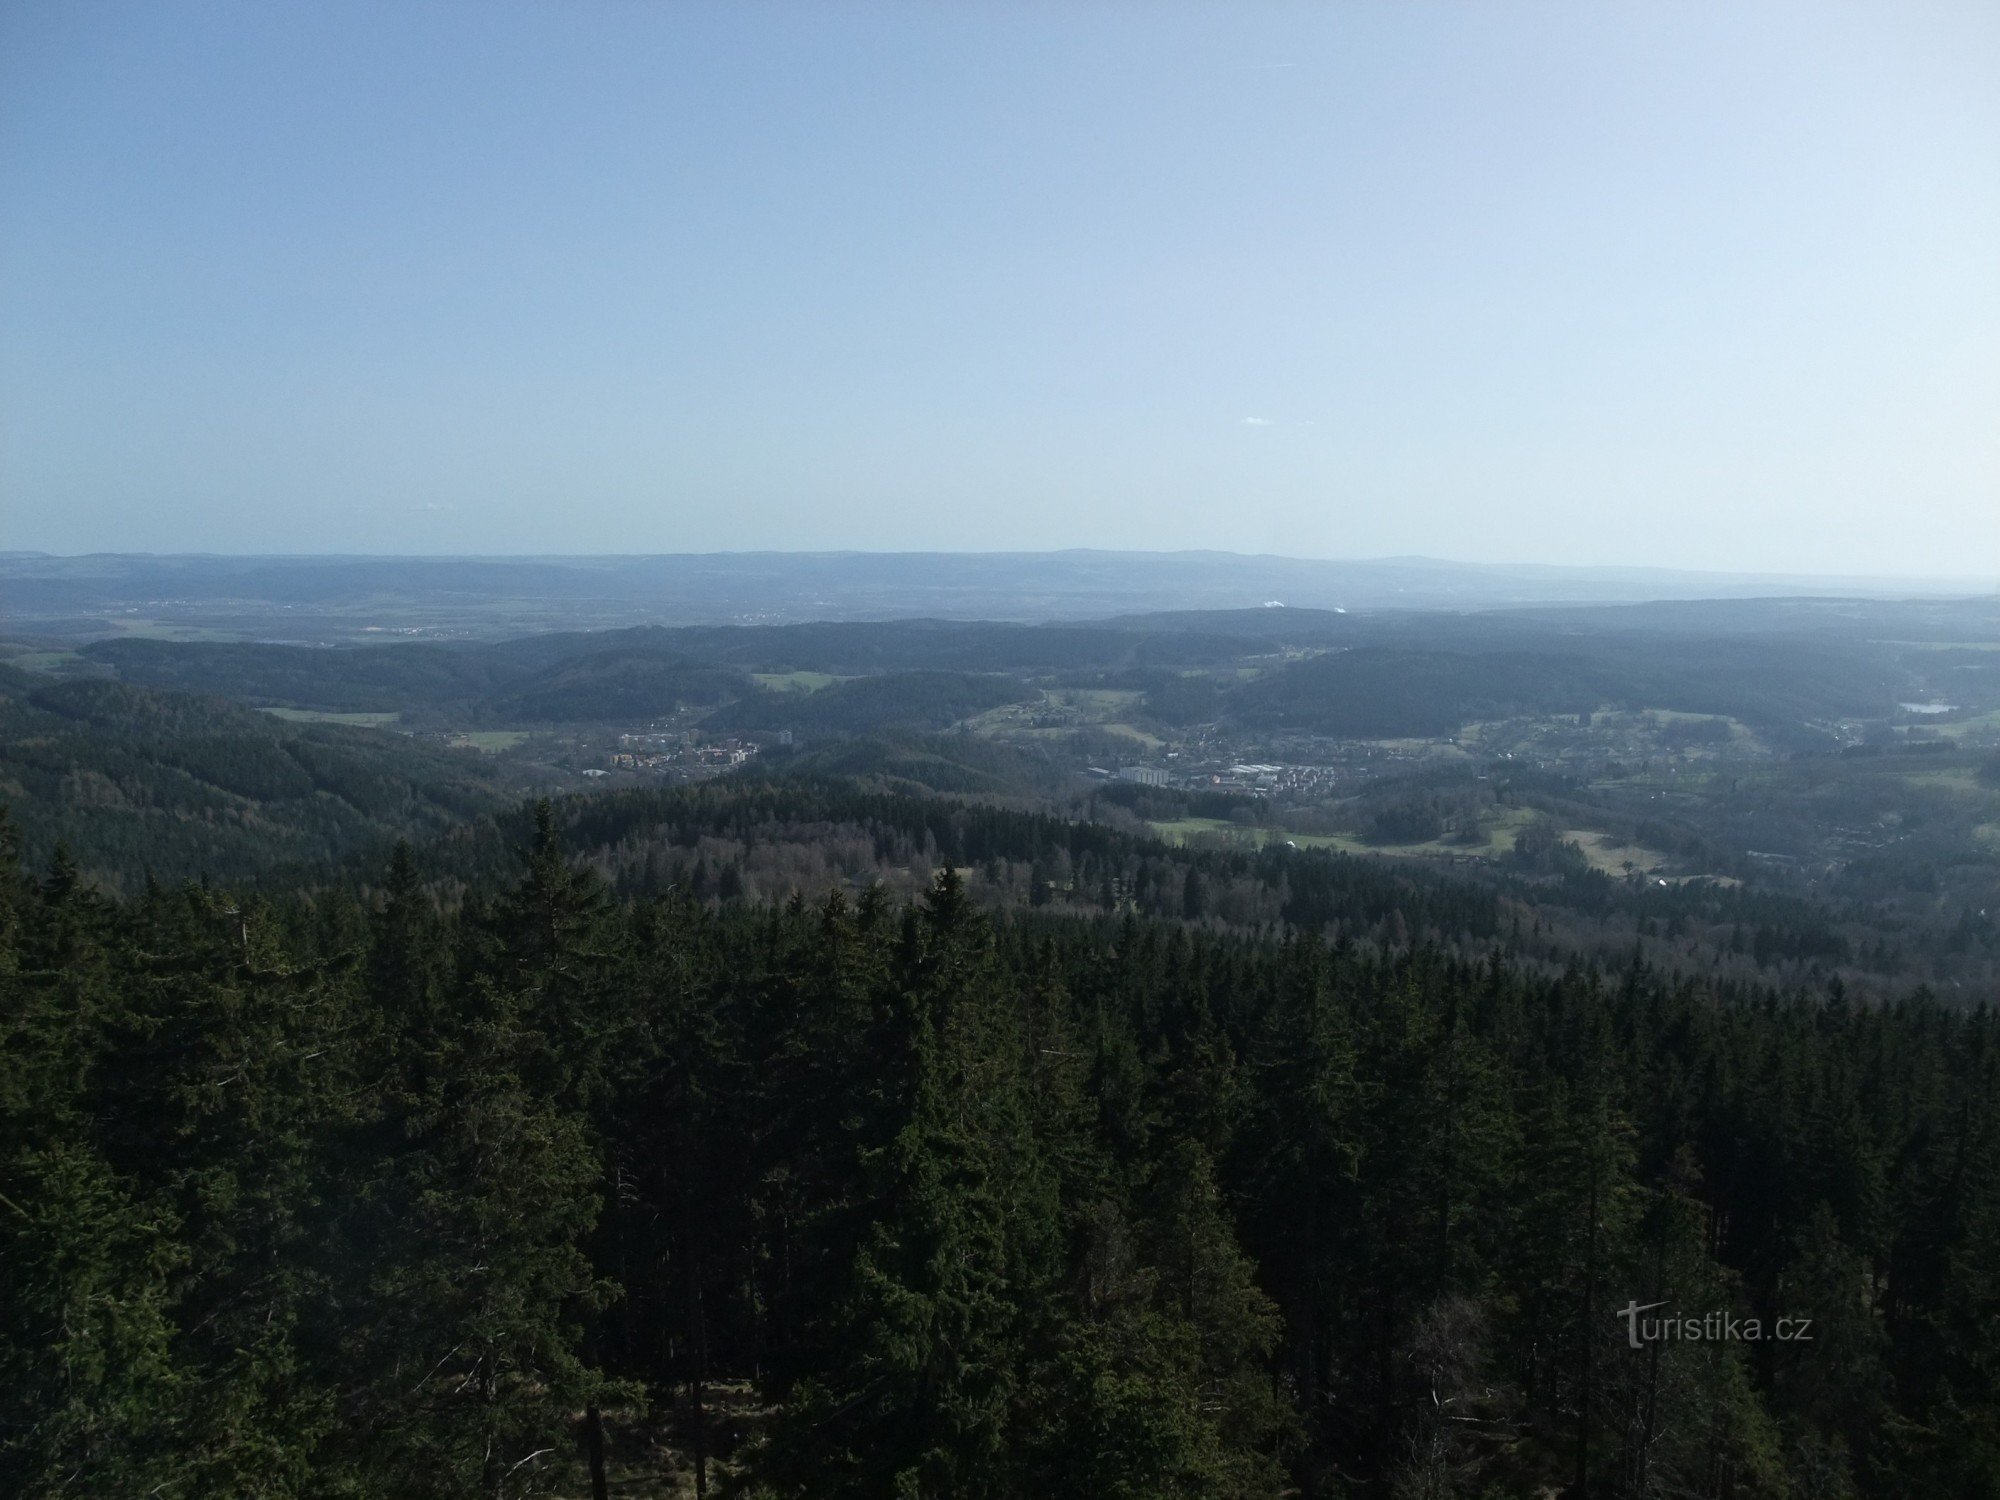 Aussichtsturm Pajndl auf Tisový vrch